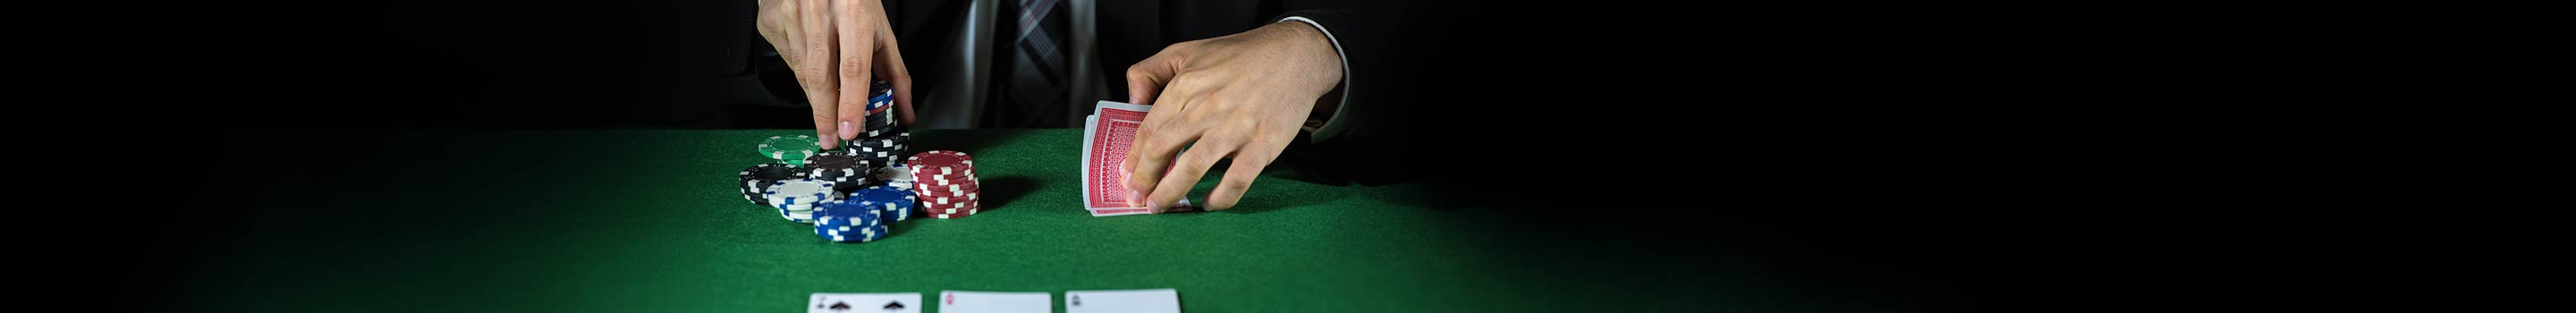 Стратегии за покер